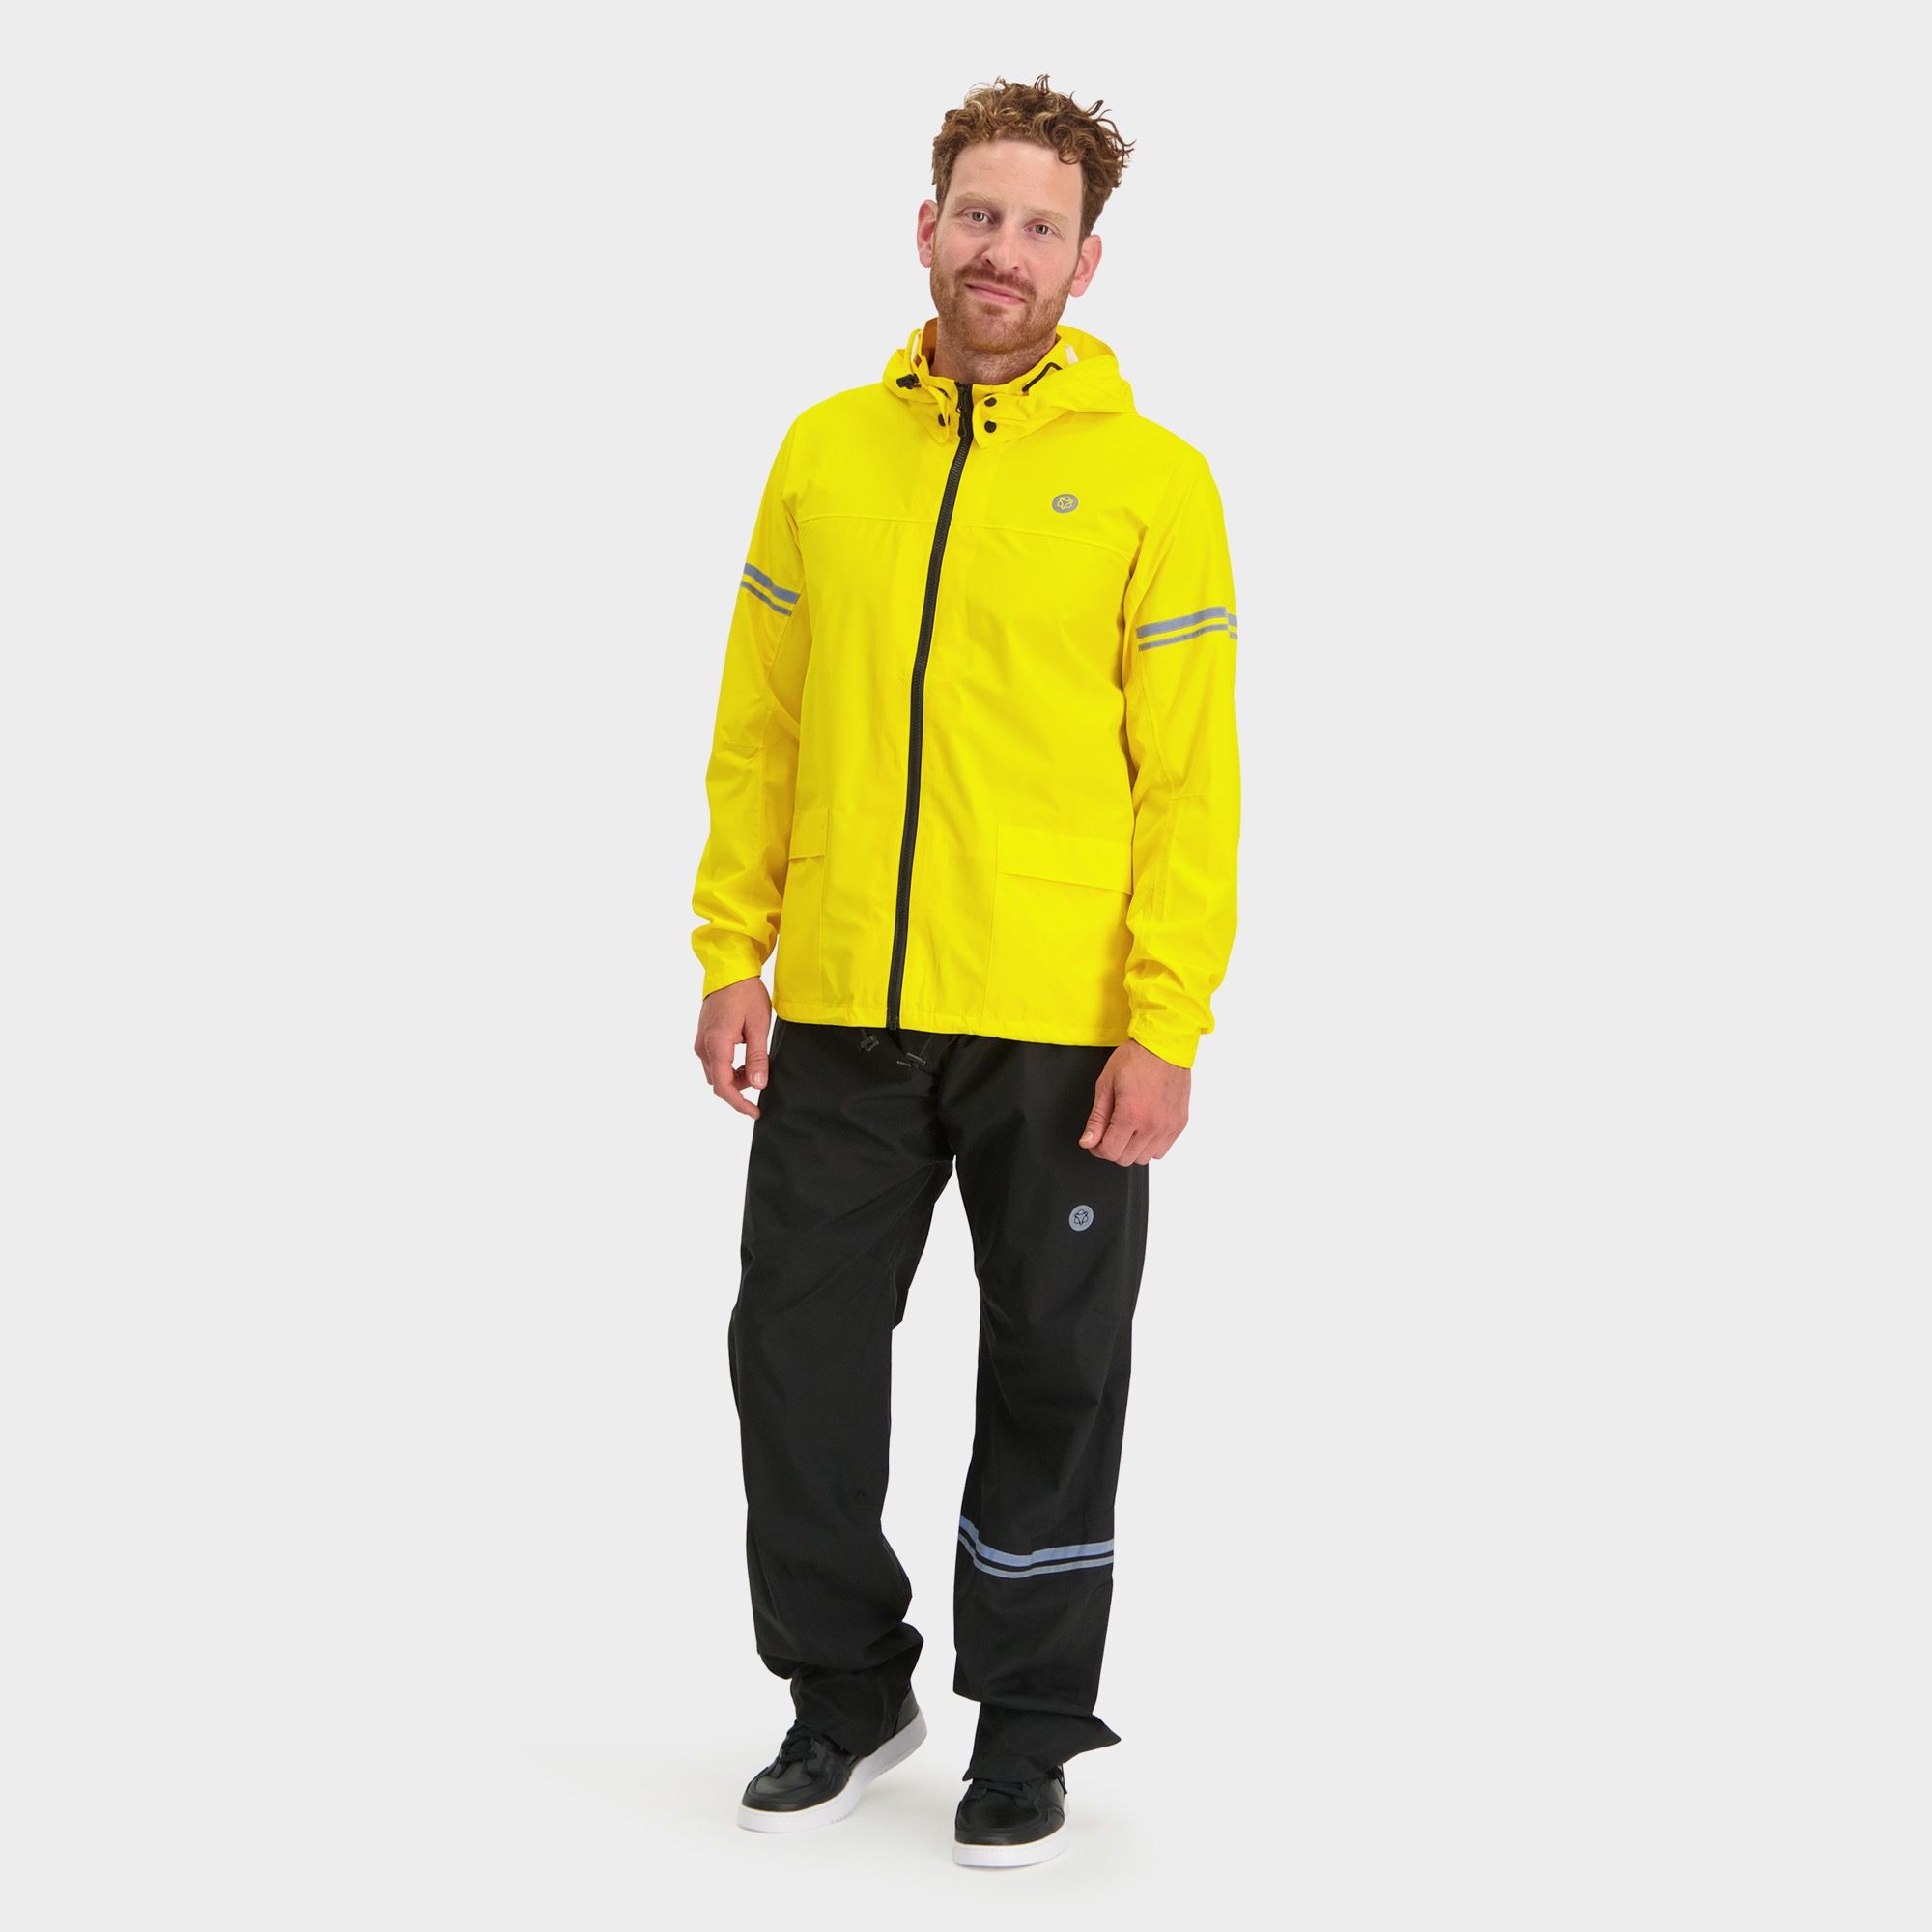 Original Rain Suit Essential fit example